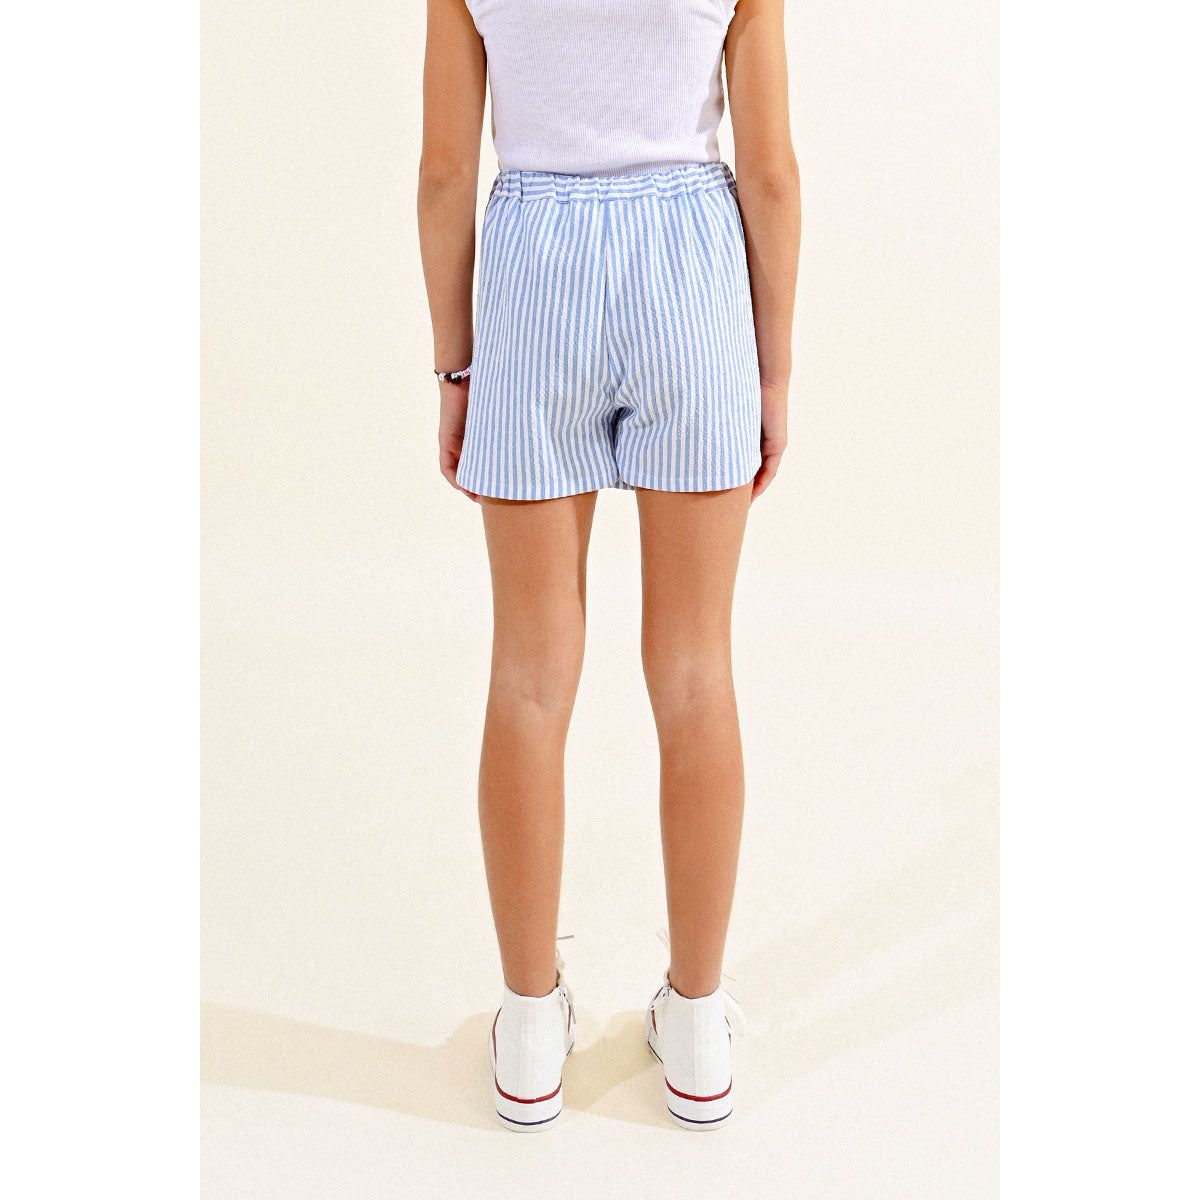 Molly Bracken - Woven Shorts in Blue Stripe